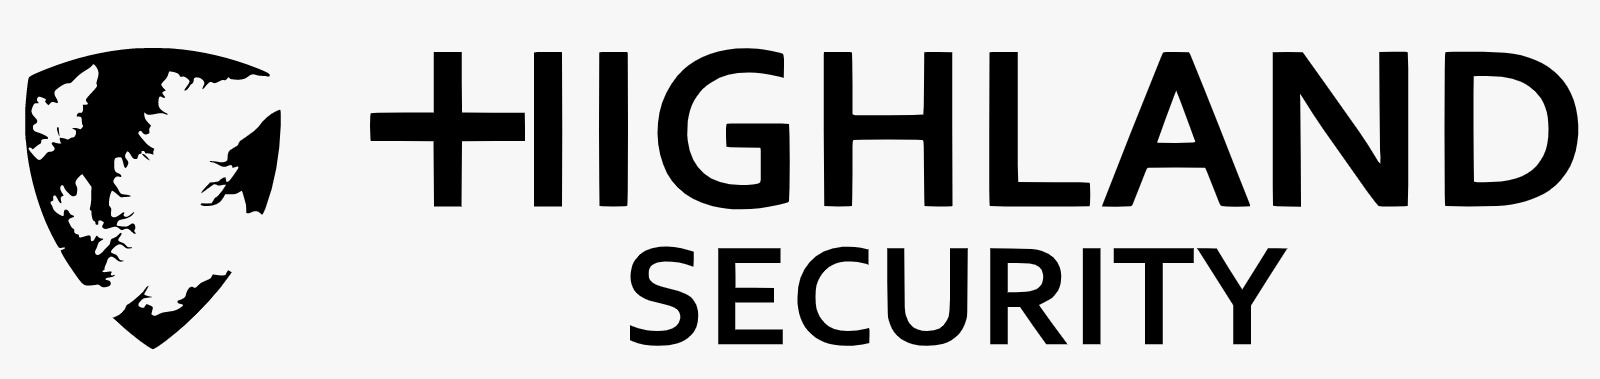 logo for Highland Security Ltd